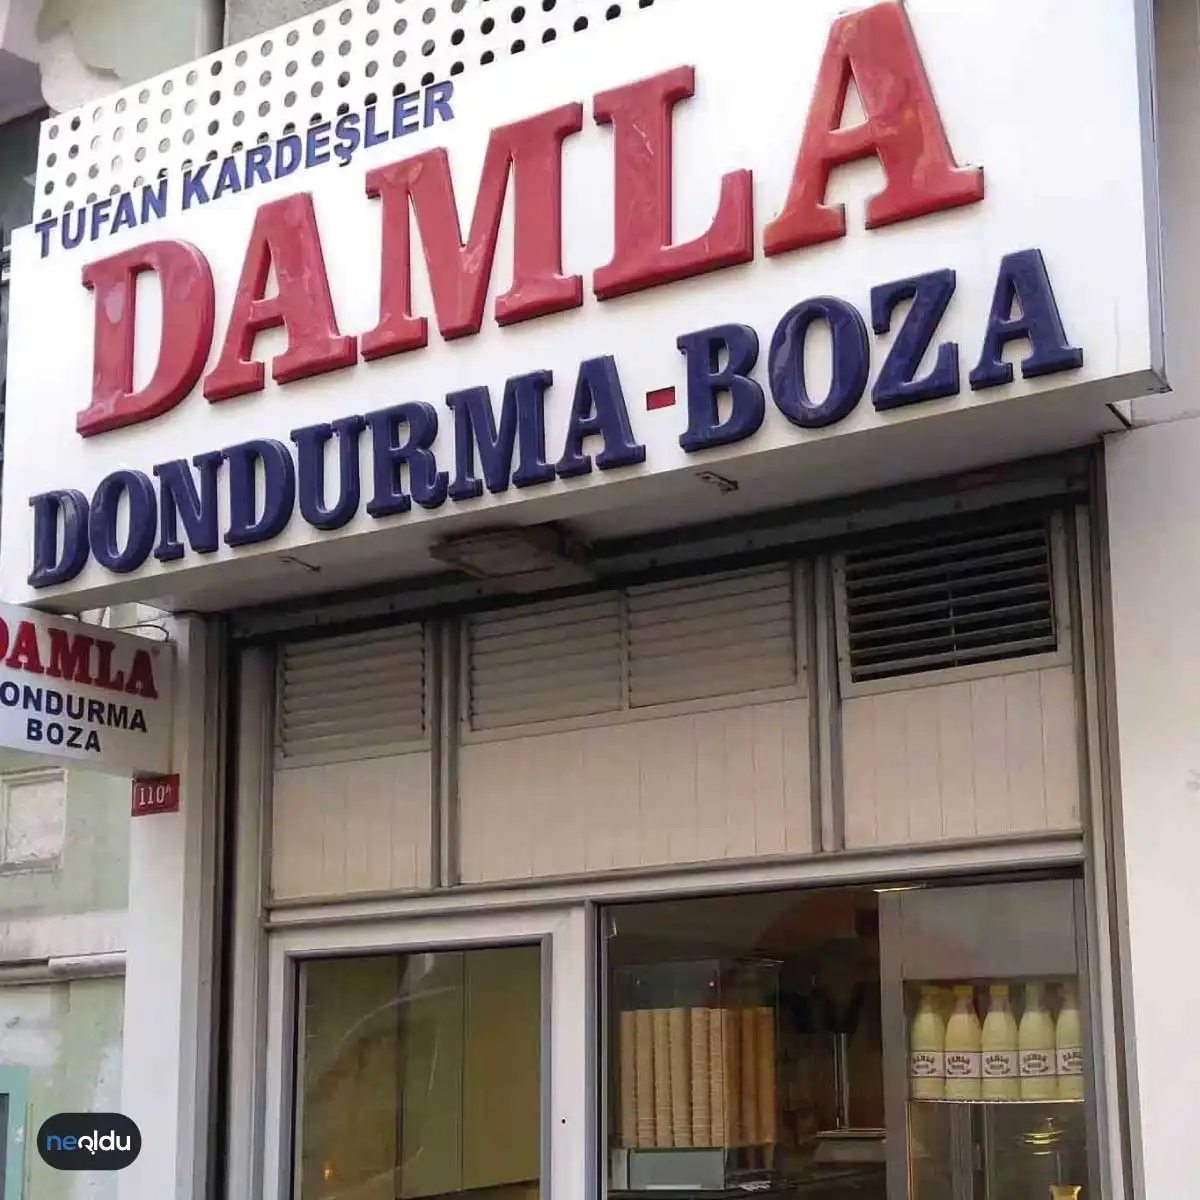 İstanbul'un En iyi Dondurmacıları